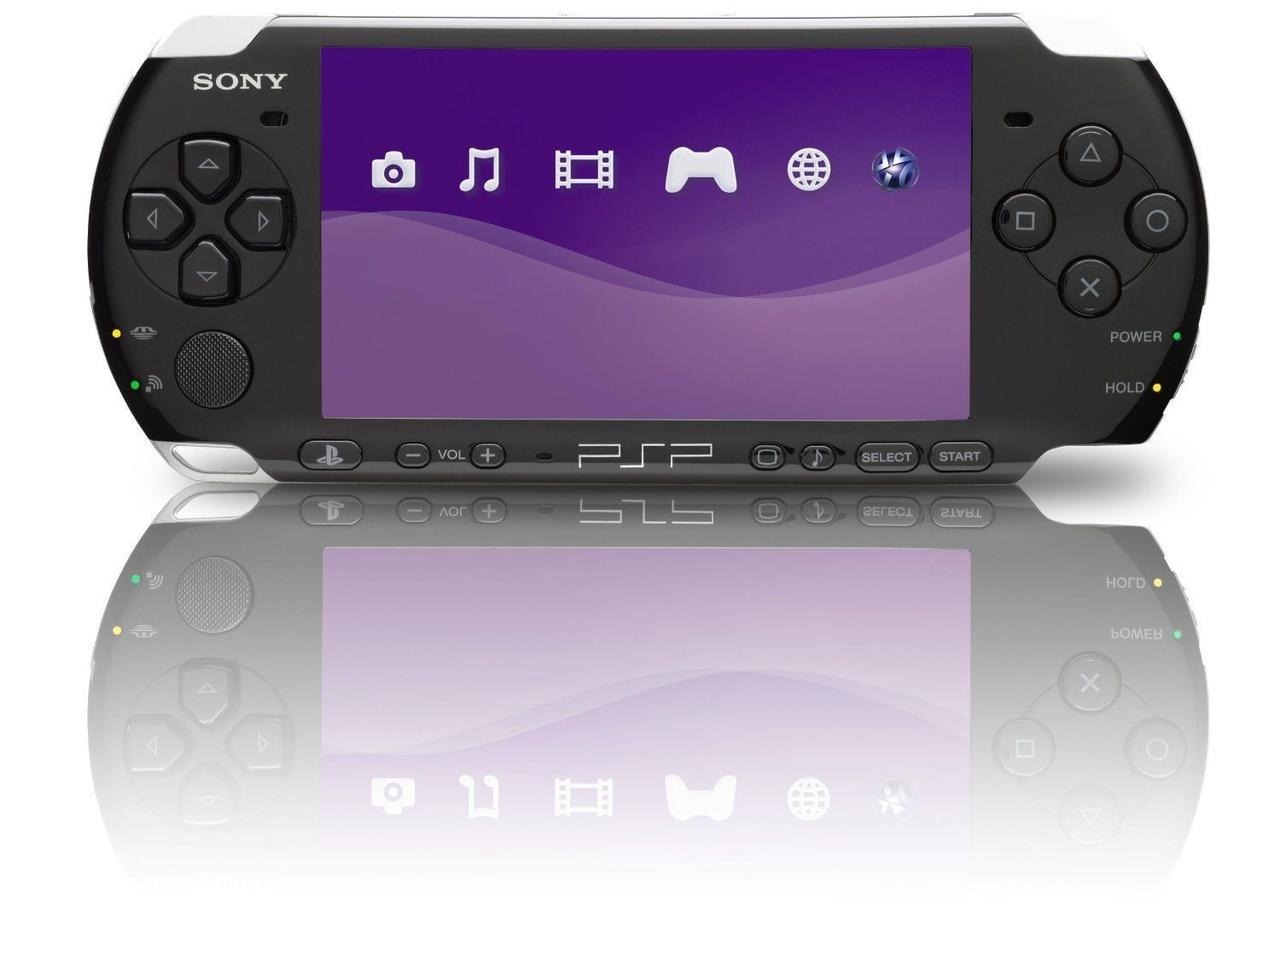 Купить Портативная игровая приставка Sony PlayStation Portable 3000 новая!!  +4 игры, цена 19900 ₴ — Prom.ua (ID#1263236257)